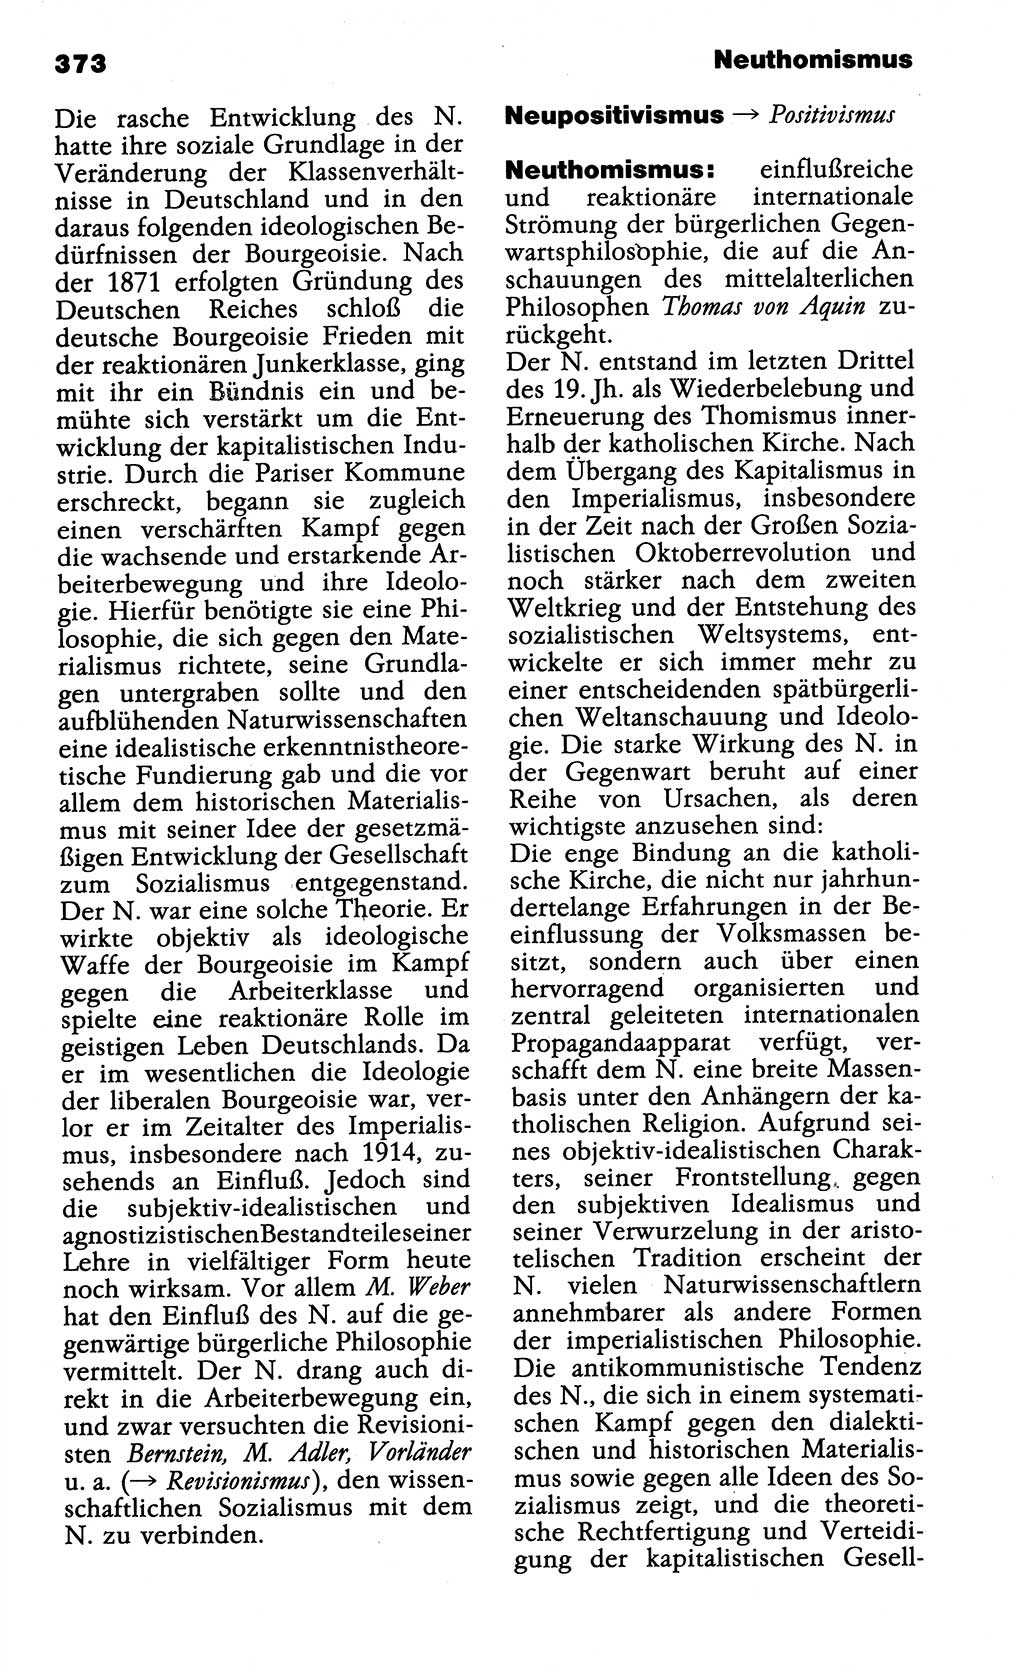 Wörterbuch der marxistisch-leninistischen Philosophie [Deutsche Demokratische Republik (DDR)] 1985, Seite 373 (Wb. ML Phil. DDR 1985, S. 373)